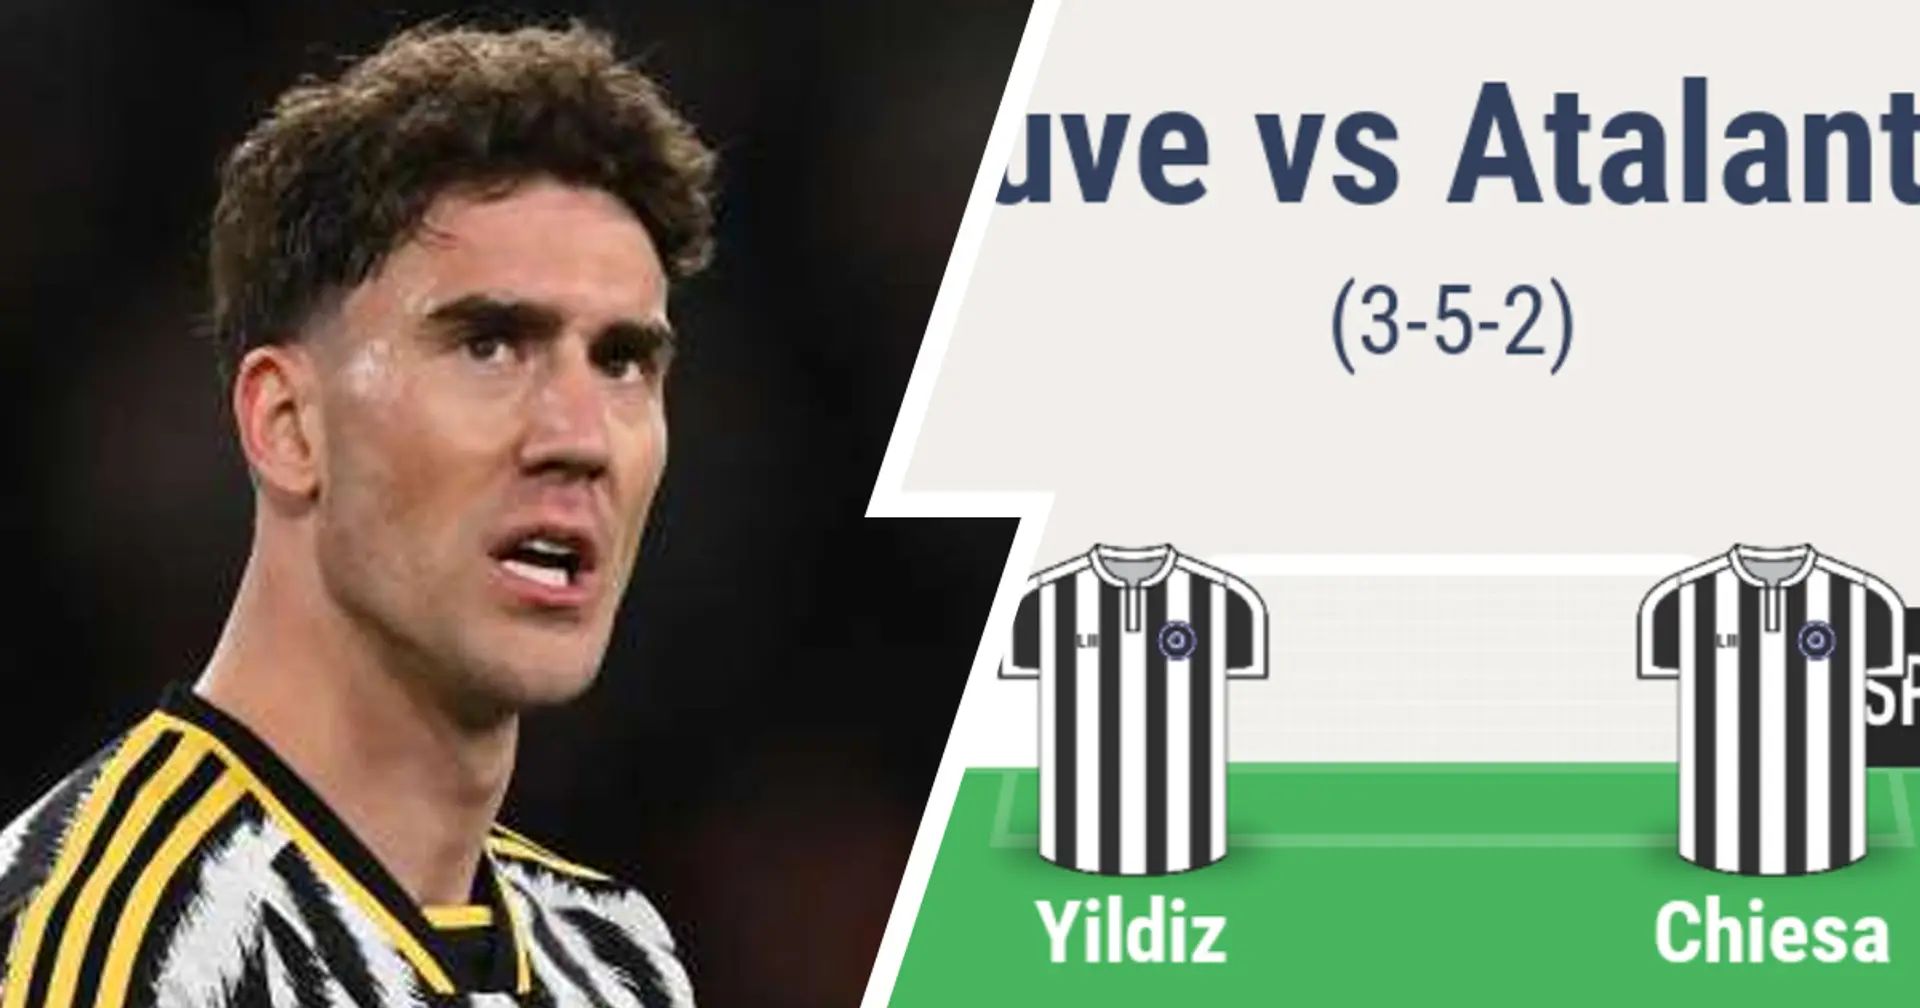 Senza Vlahovic, chi deve giocare dal 1' contro l'Atalanta? 2 opzioni per la Juventus